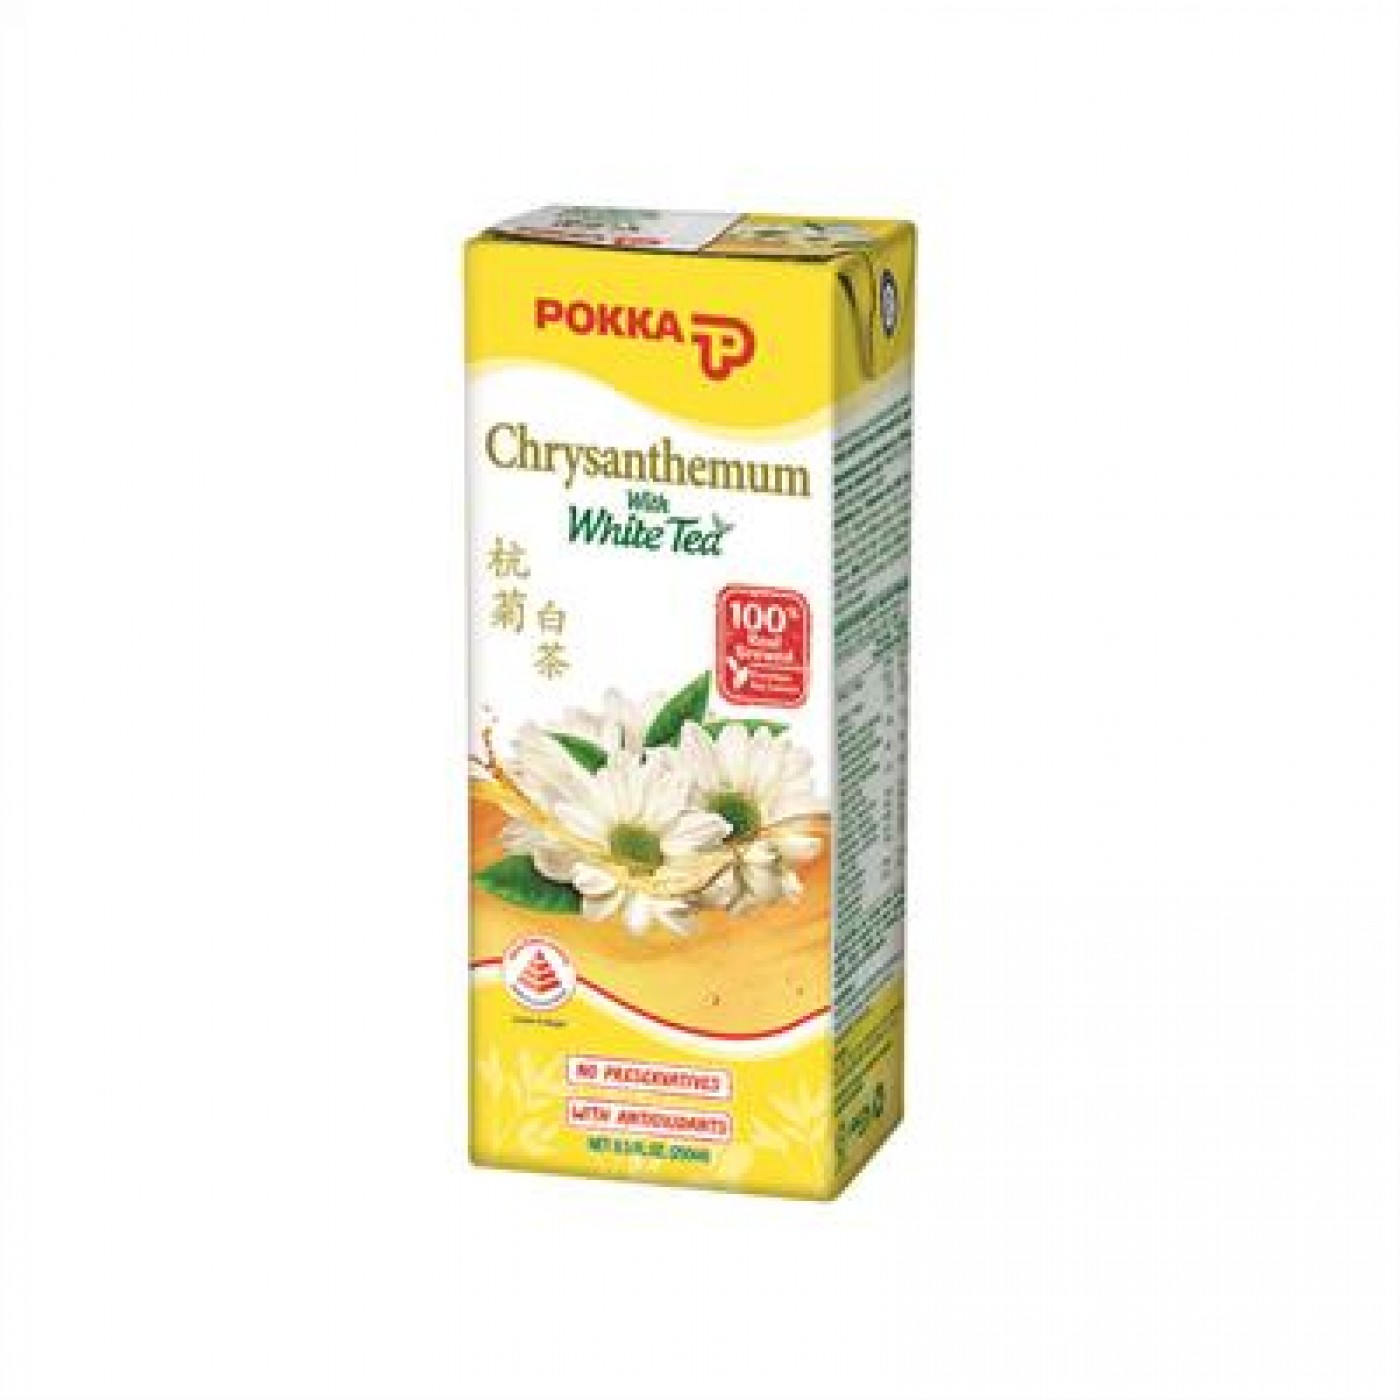 POKKA 250ML CHRYSANTHEMUM WHITE TEA